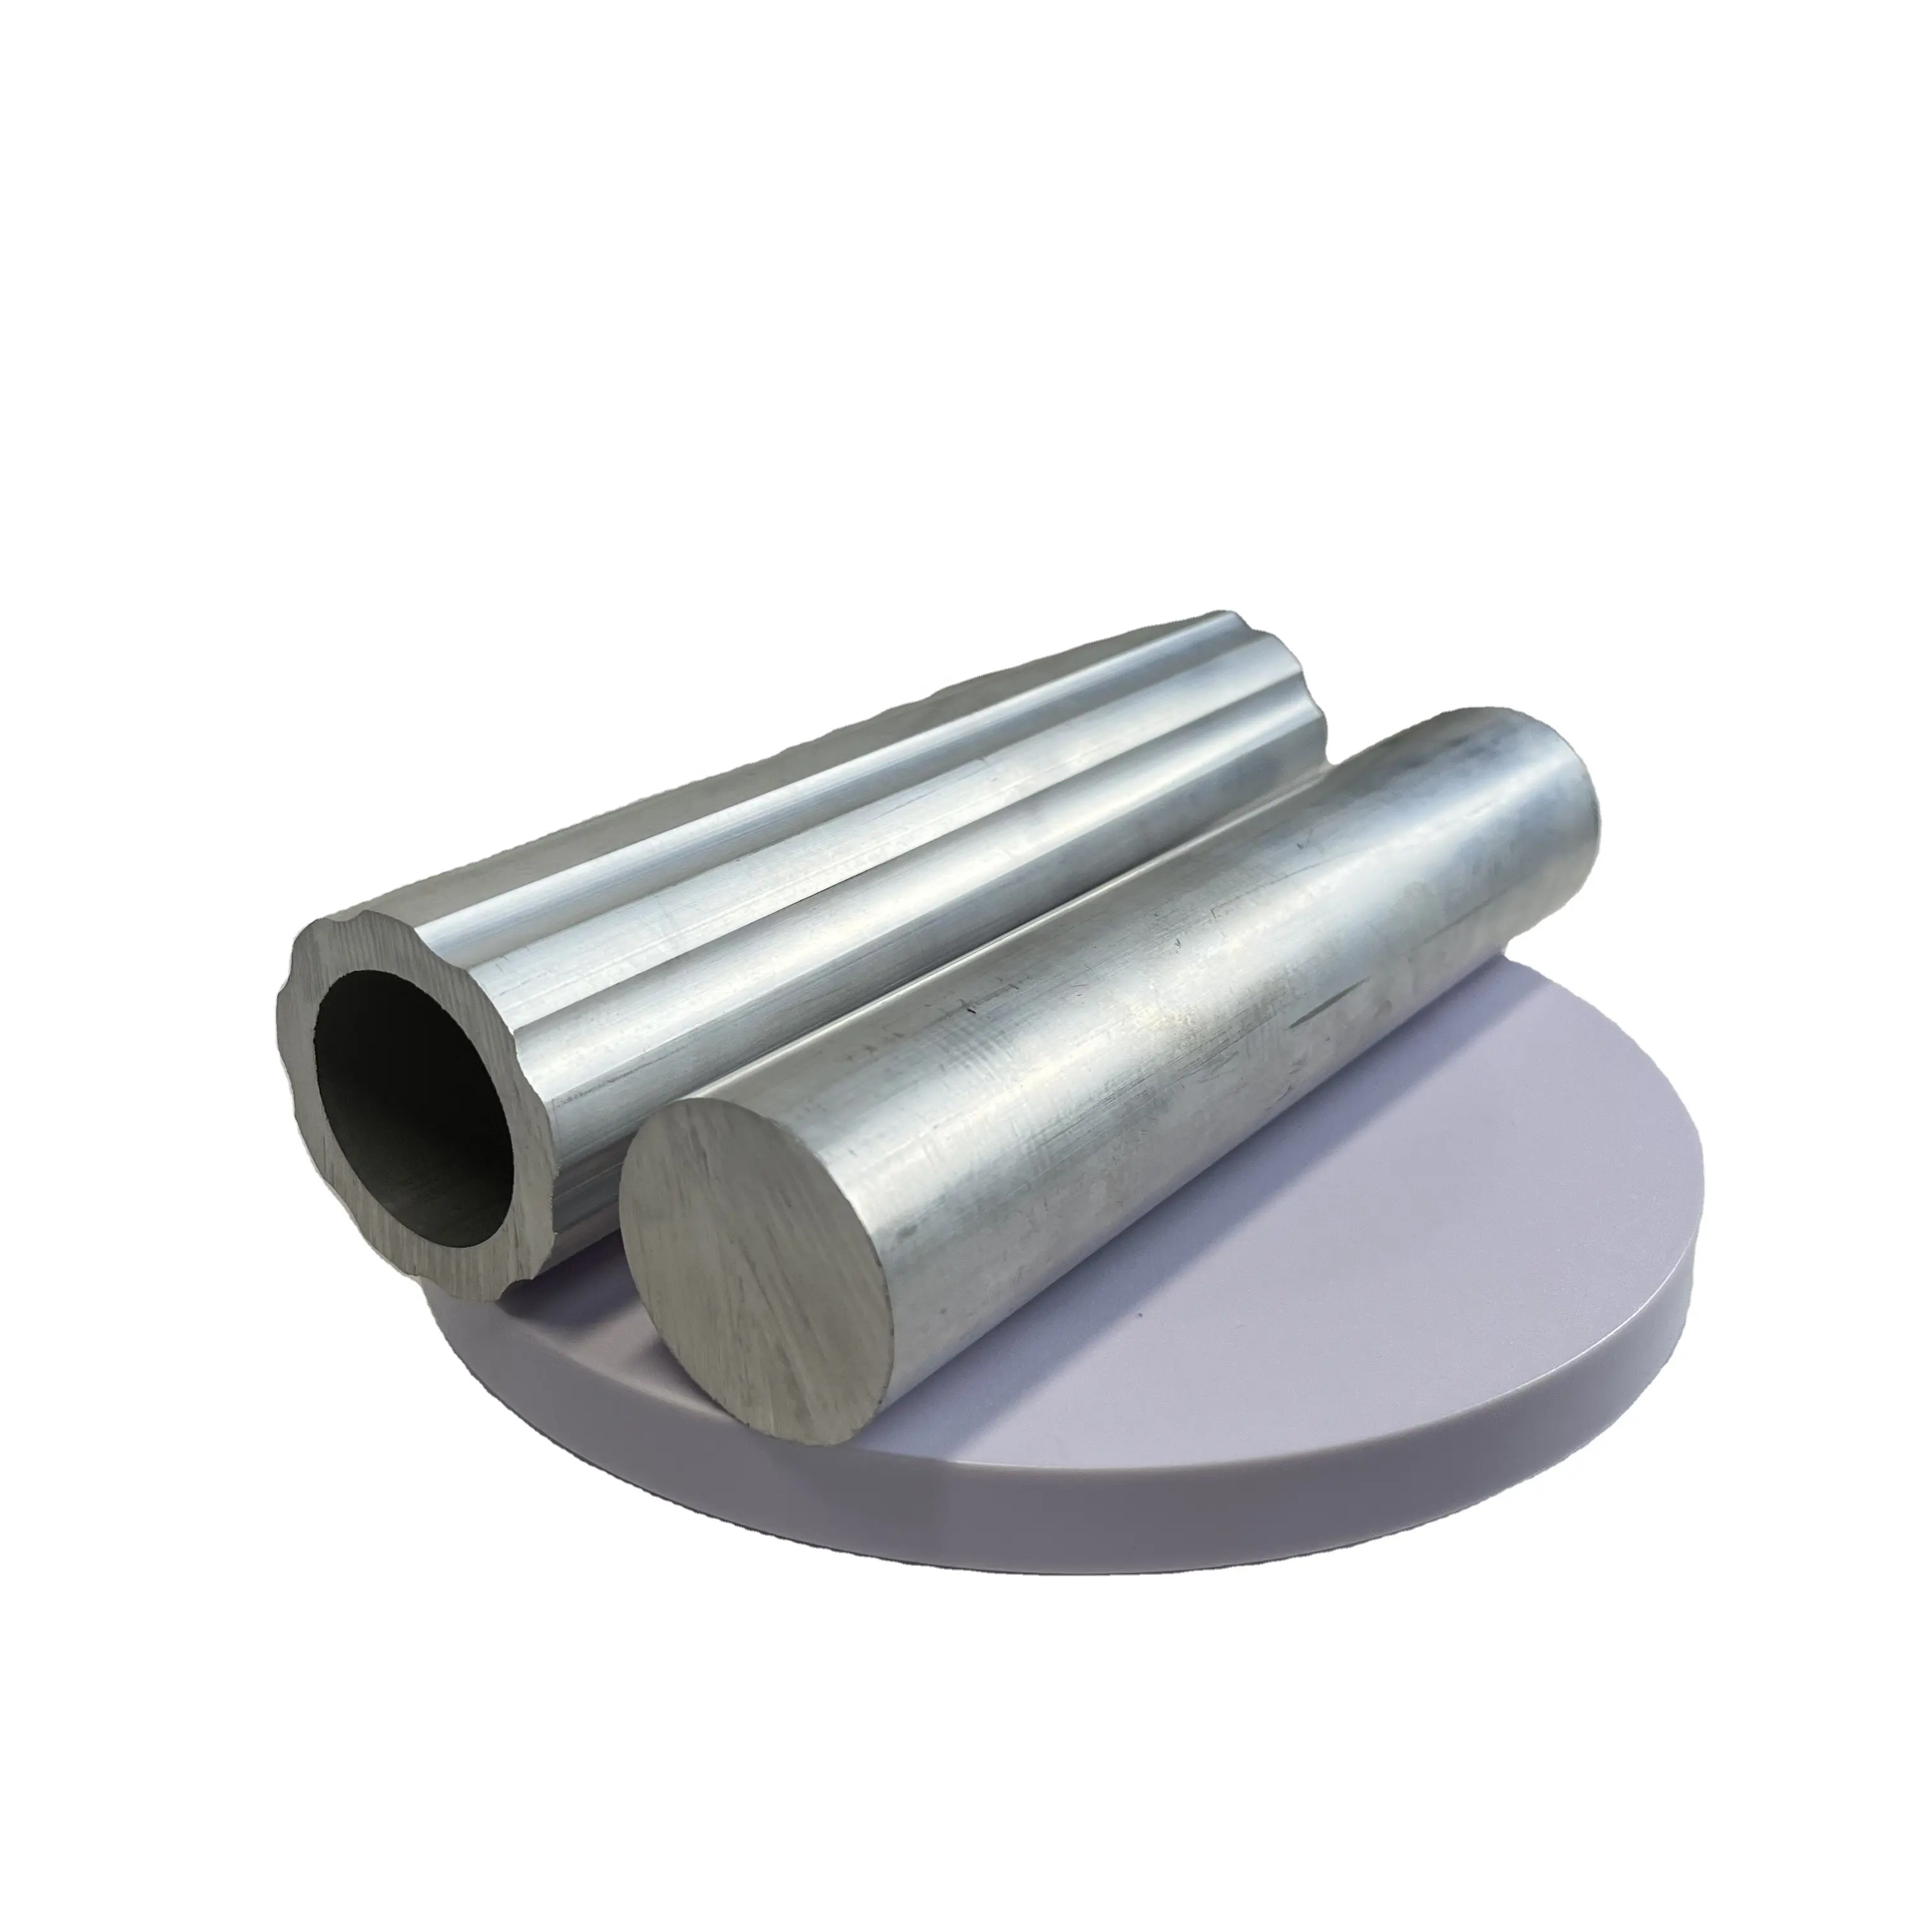 QIANGFENG ALUMINUM China Supplier Aluminum Round Tubing 6063 t5 6061 t6 Aluminum Pipe Tube